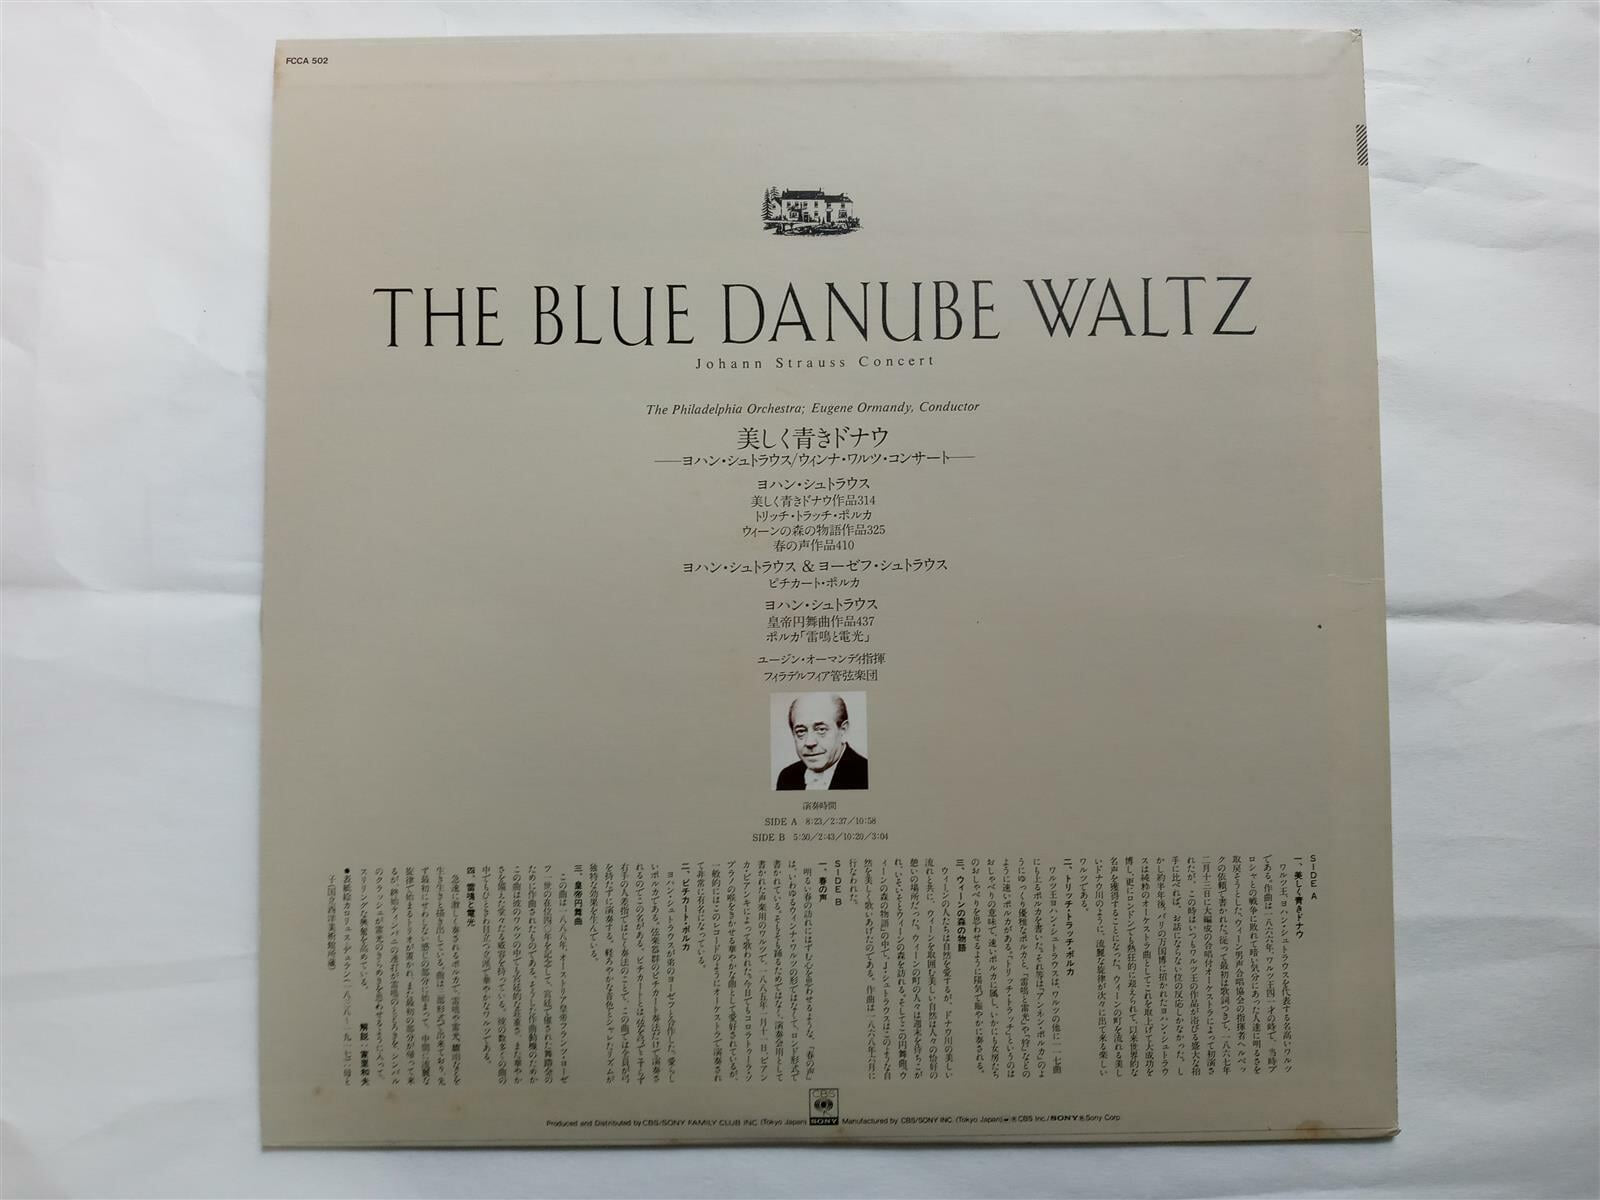 LP(수입) 요한 슈트라우스: The Blue Danube Waltz - 유진 오먼디 / 필라델피아 관현악단